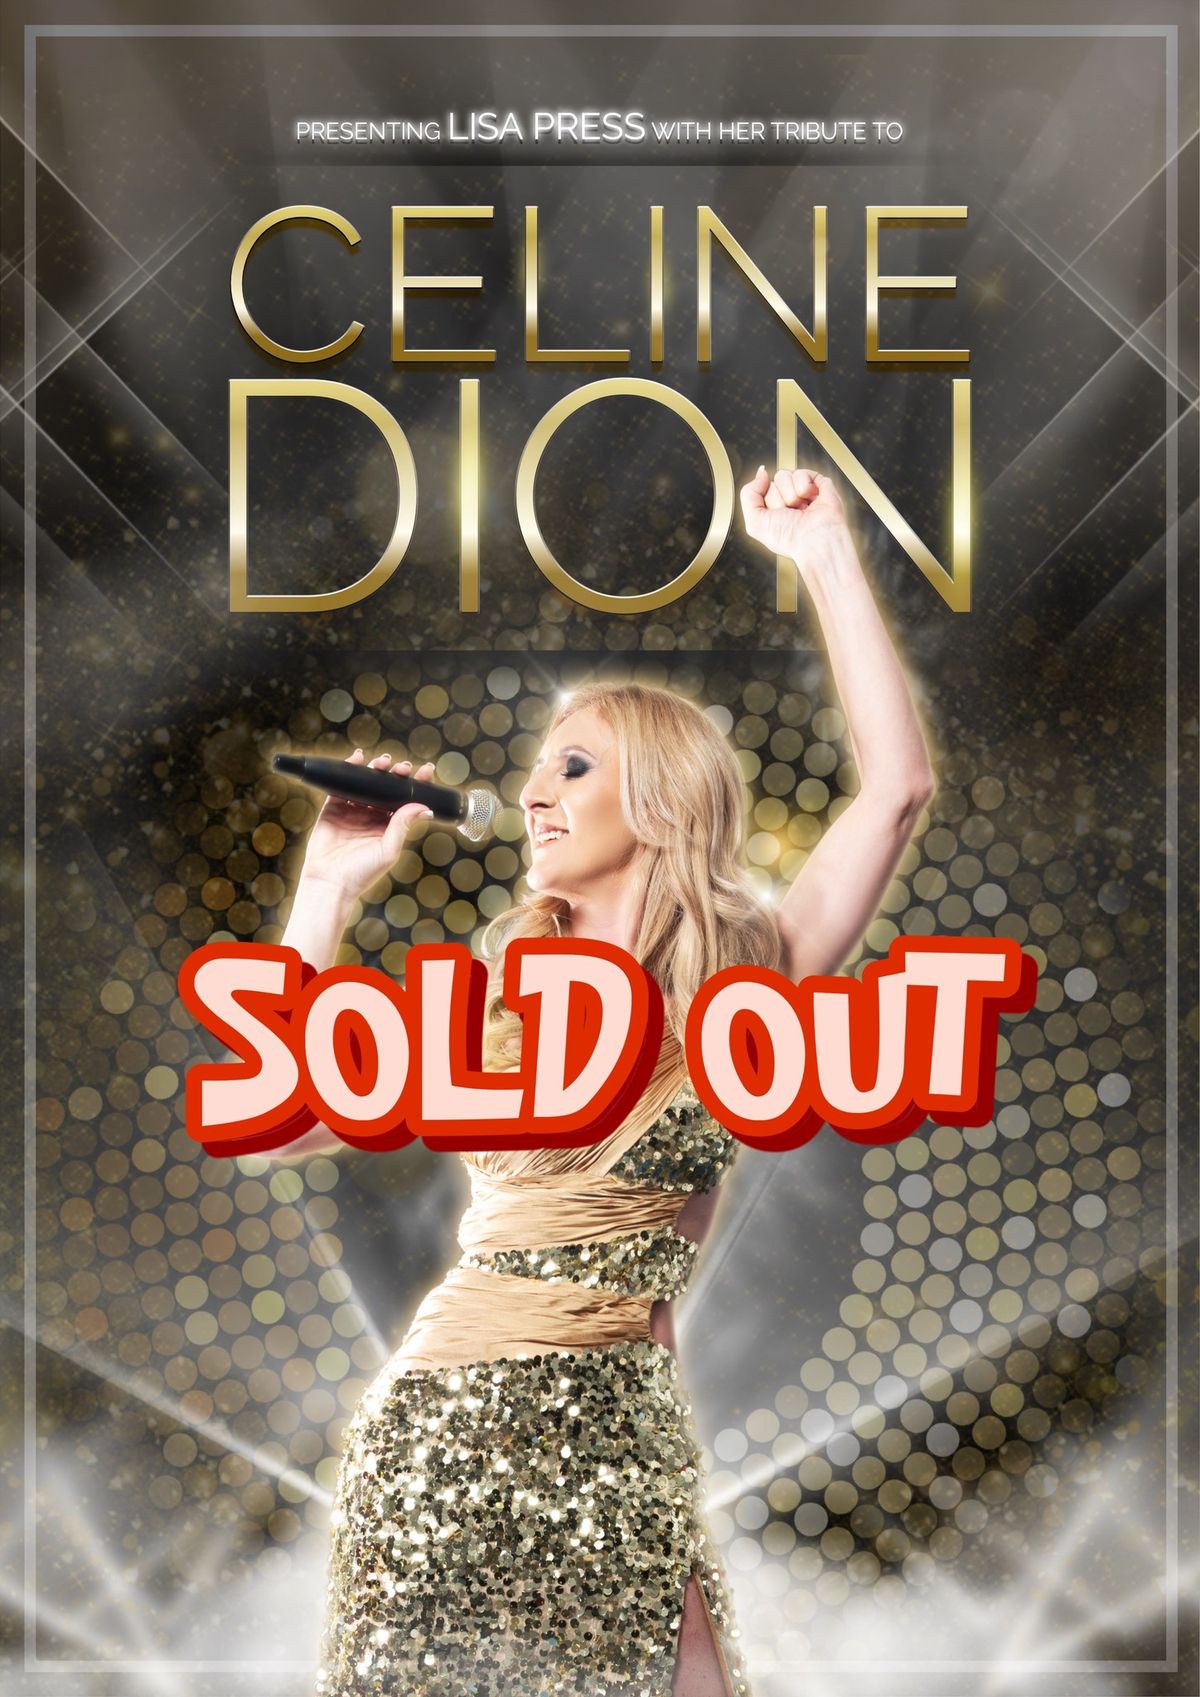 Celine Dion Tribute Show